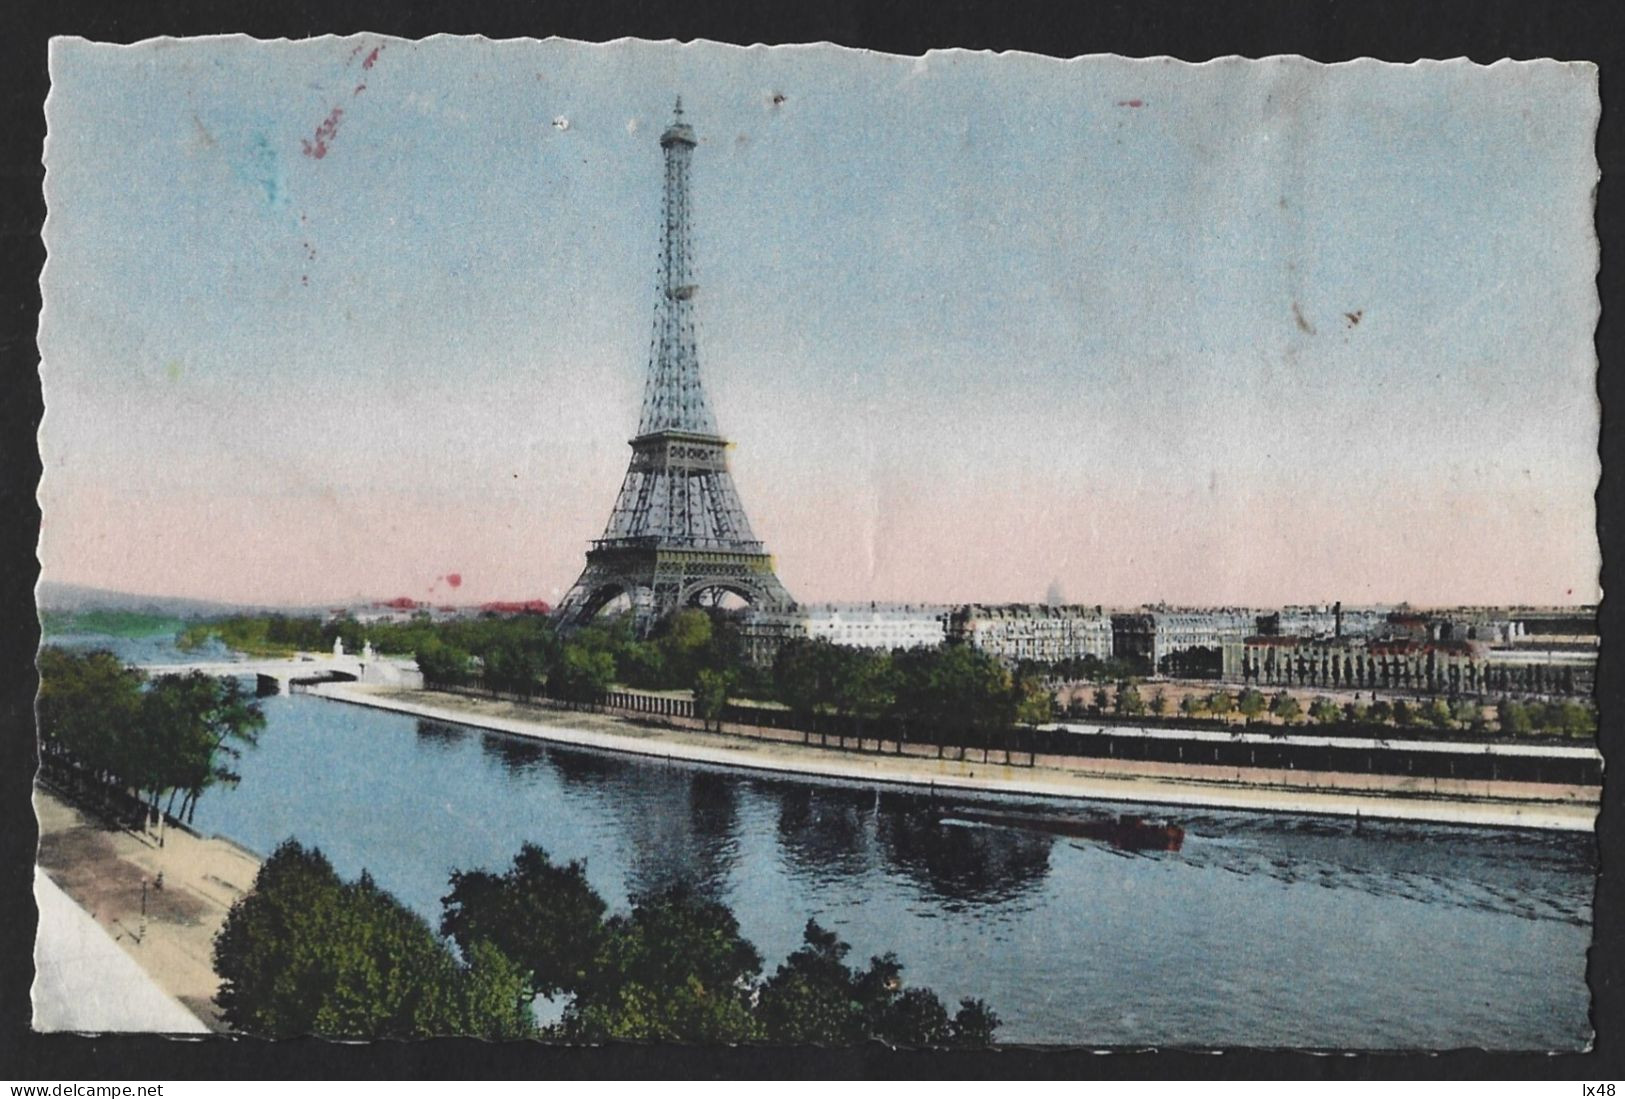 Stationery Postcard Of The Eiffel Tower From 1952 With An Old Paris Vignette.Carte Postale De Papeterie De La Tour Eiffe - Hôtellerie - Horeca